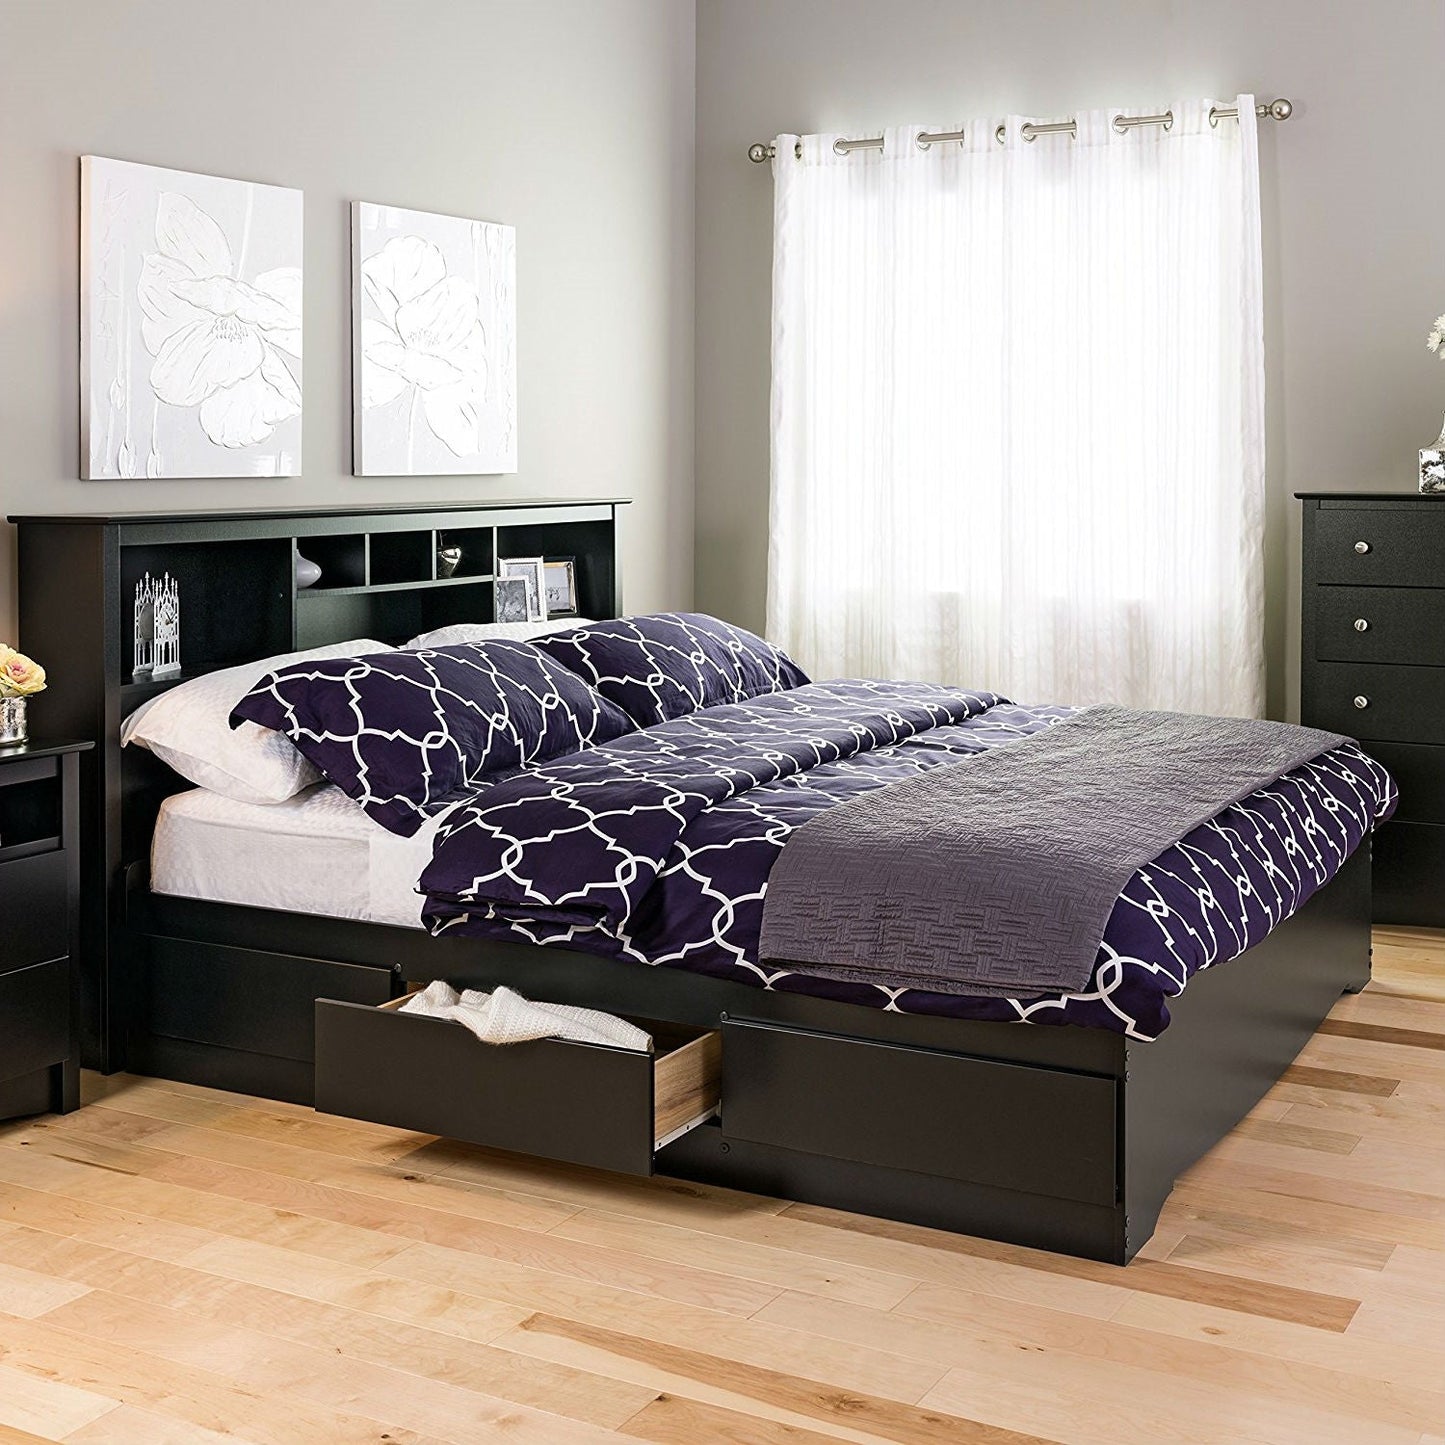 Bedroom > Bed Frames > Platform Beds - King Size Black Wood Platform Bed Frame With Storage Drawers